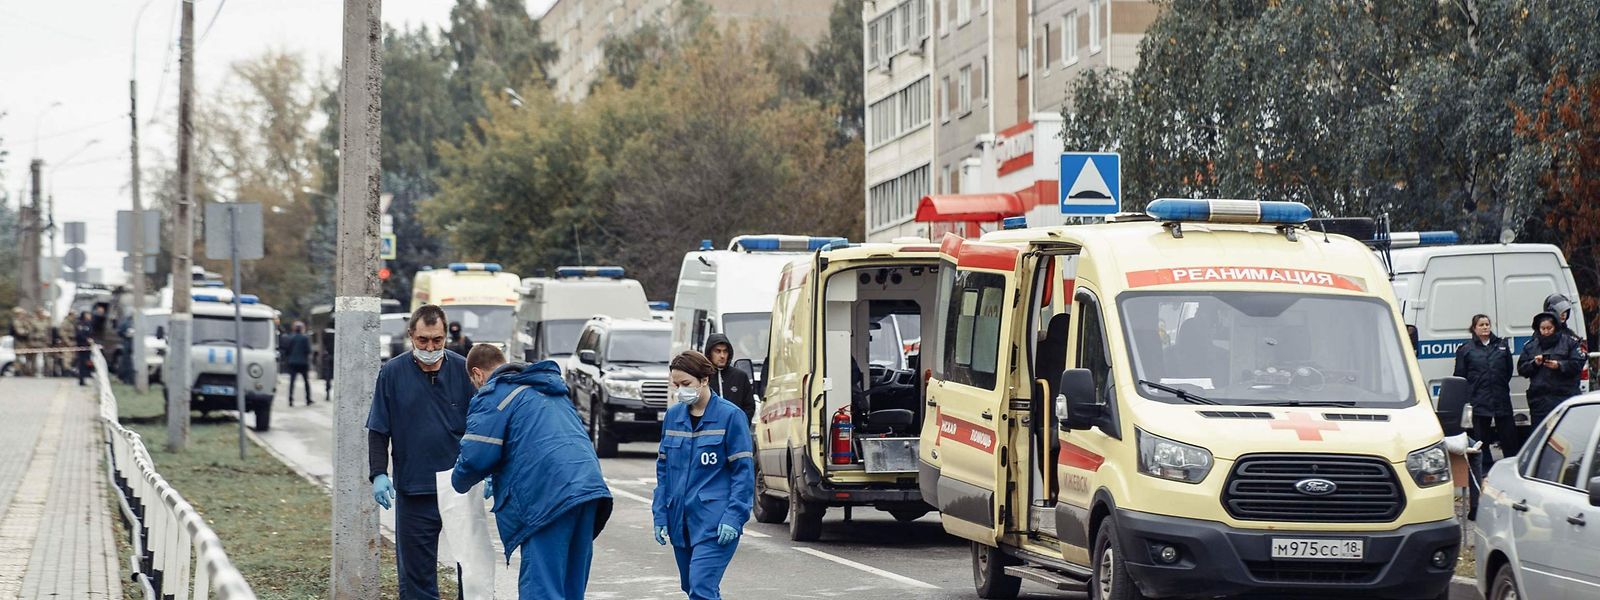 De acordo com o Ministério da Saúde russo, "14 equipas de ambulância" também estão no local e "um grupo de médicos" deve ir a Izhevsk em breve "para ajudar as vítimas".